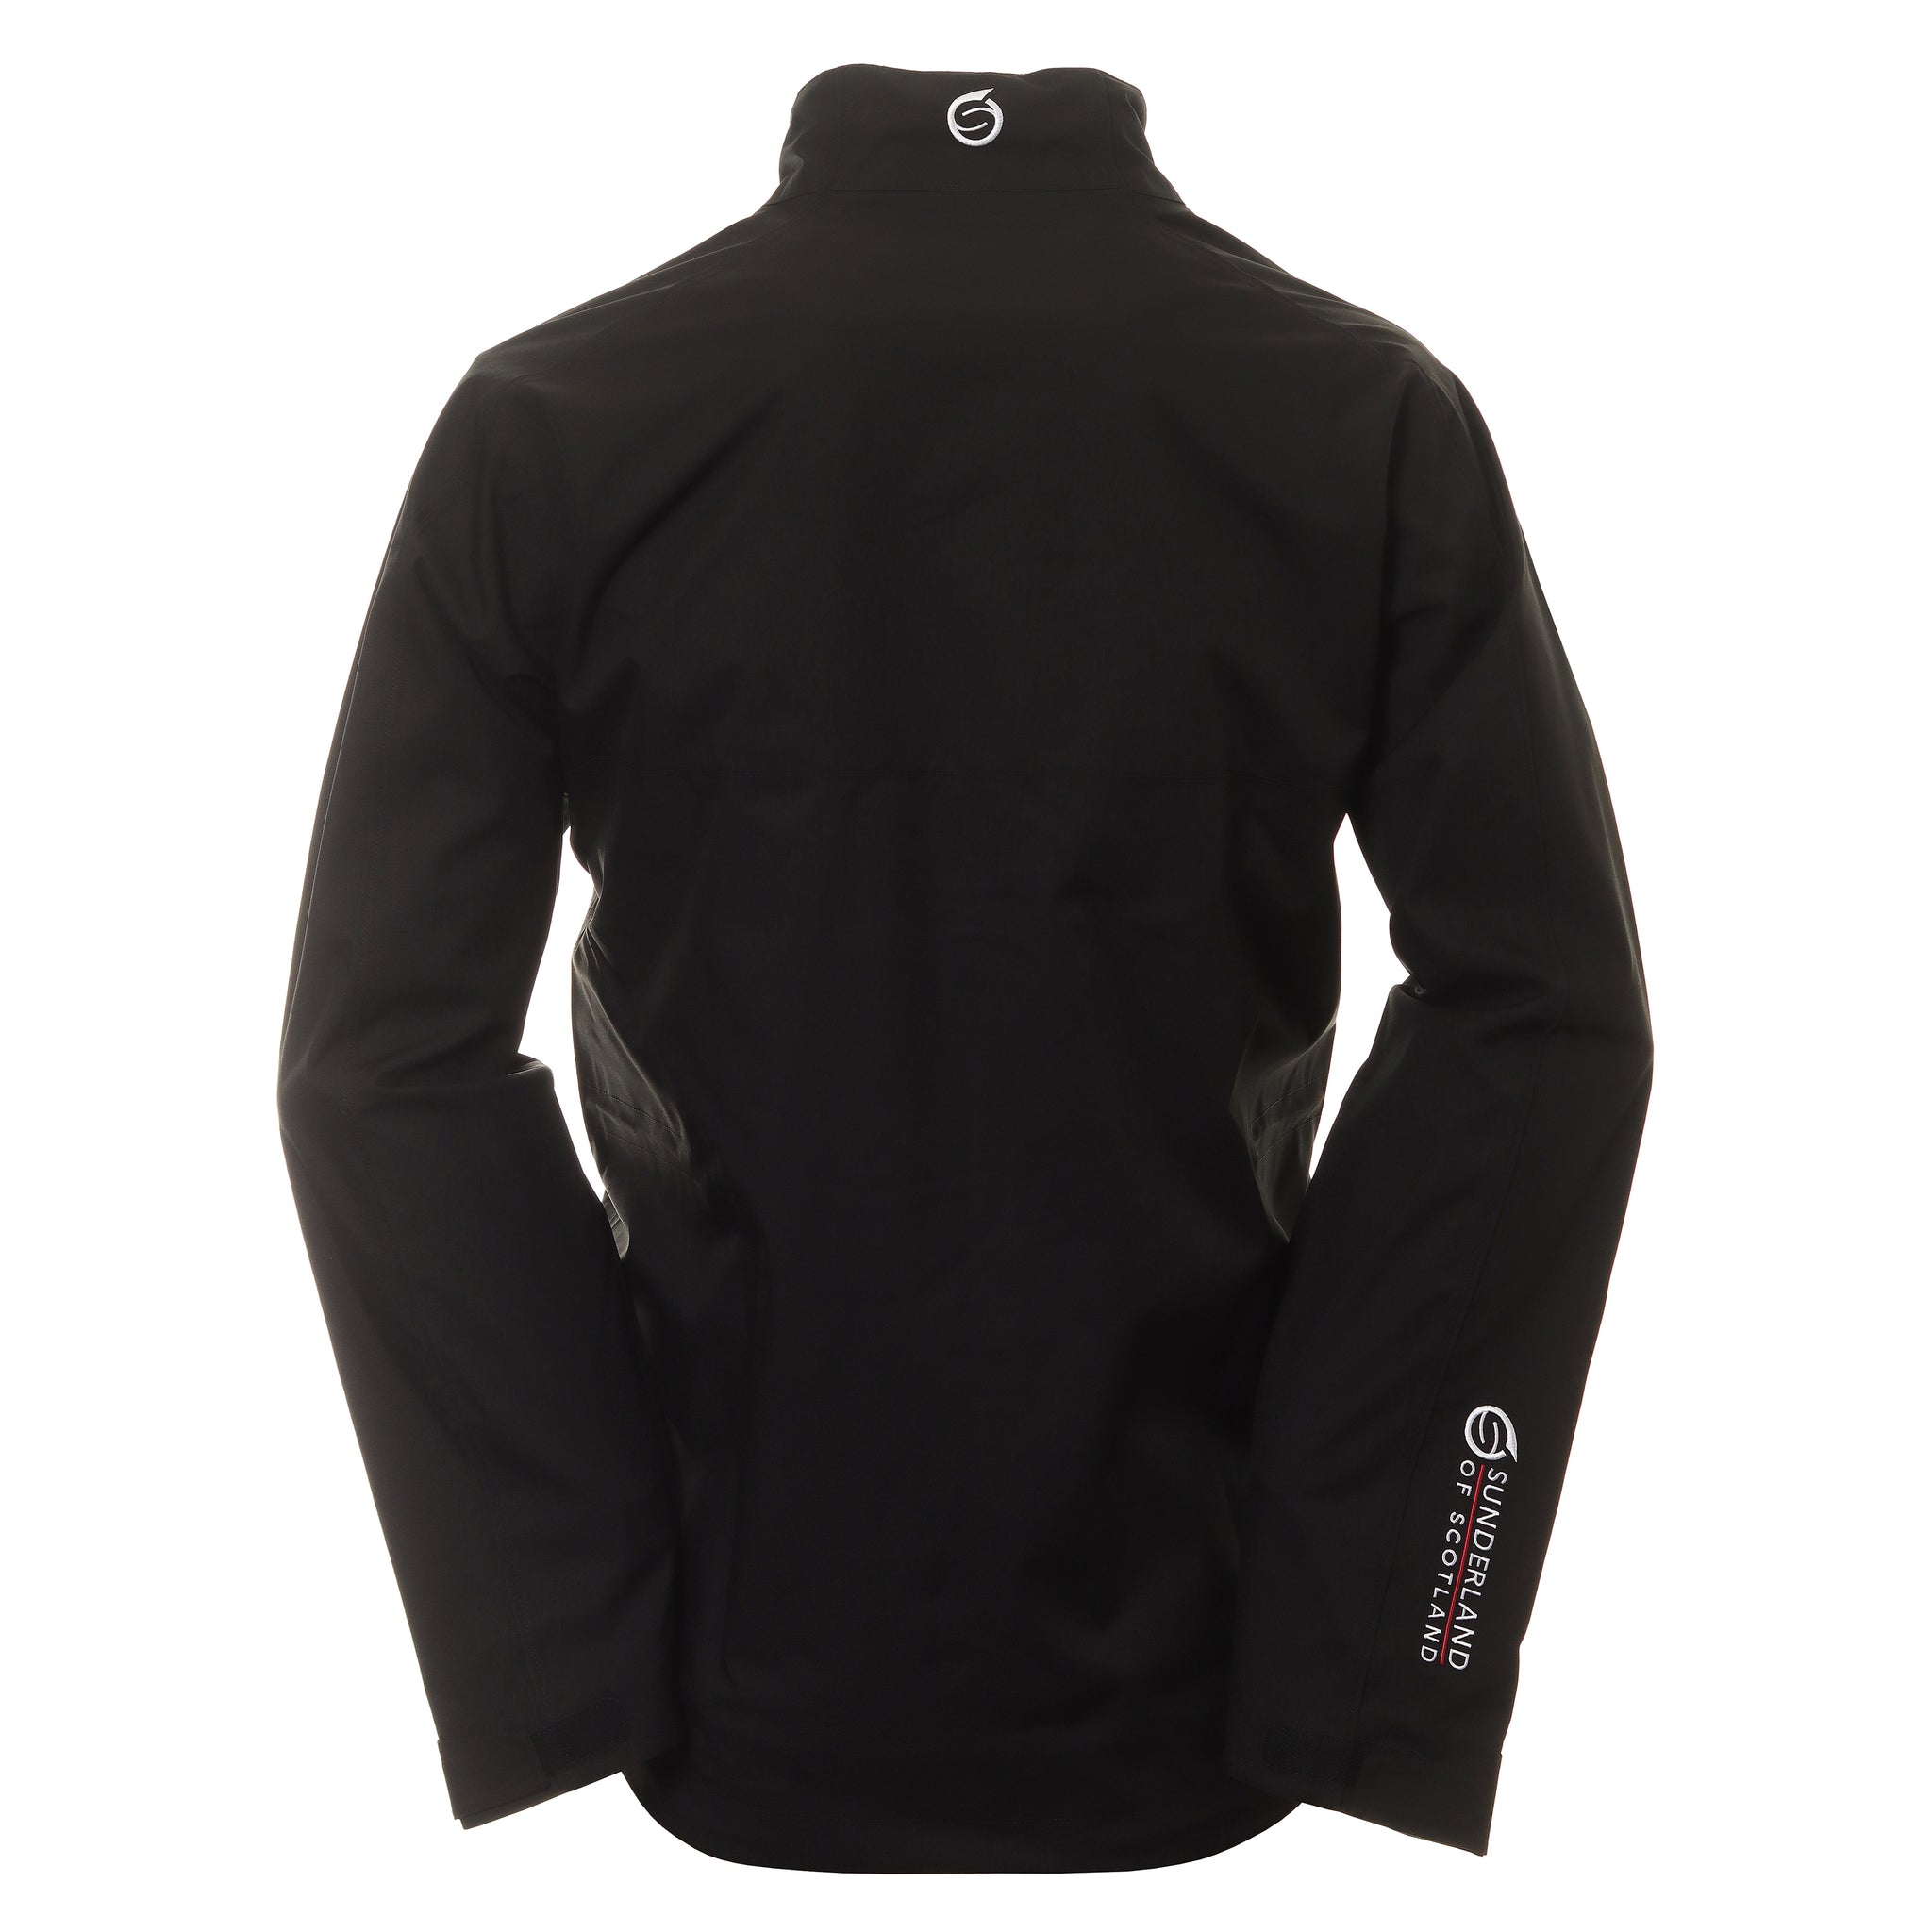 sunderland-golf-matterhorn-waterproof-jacket-sunmr91-mat-black